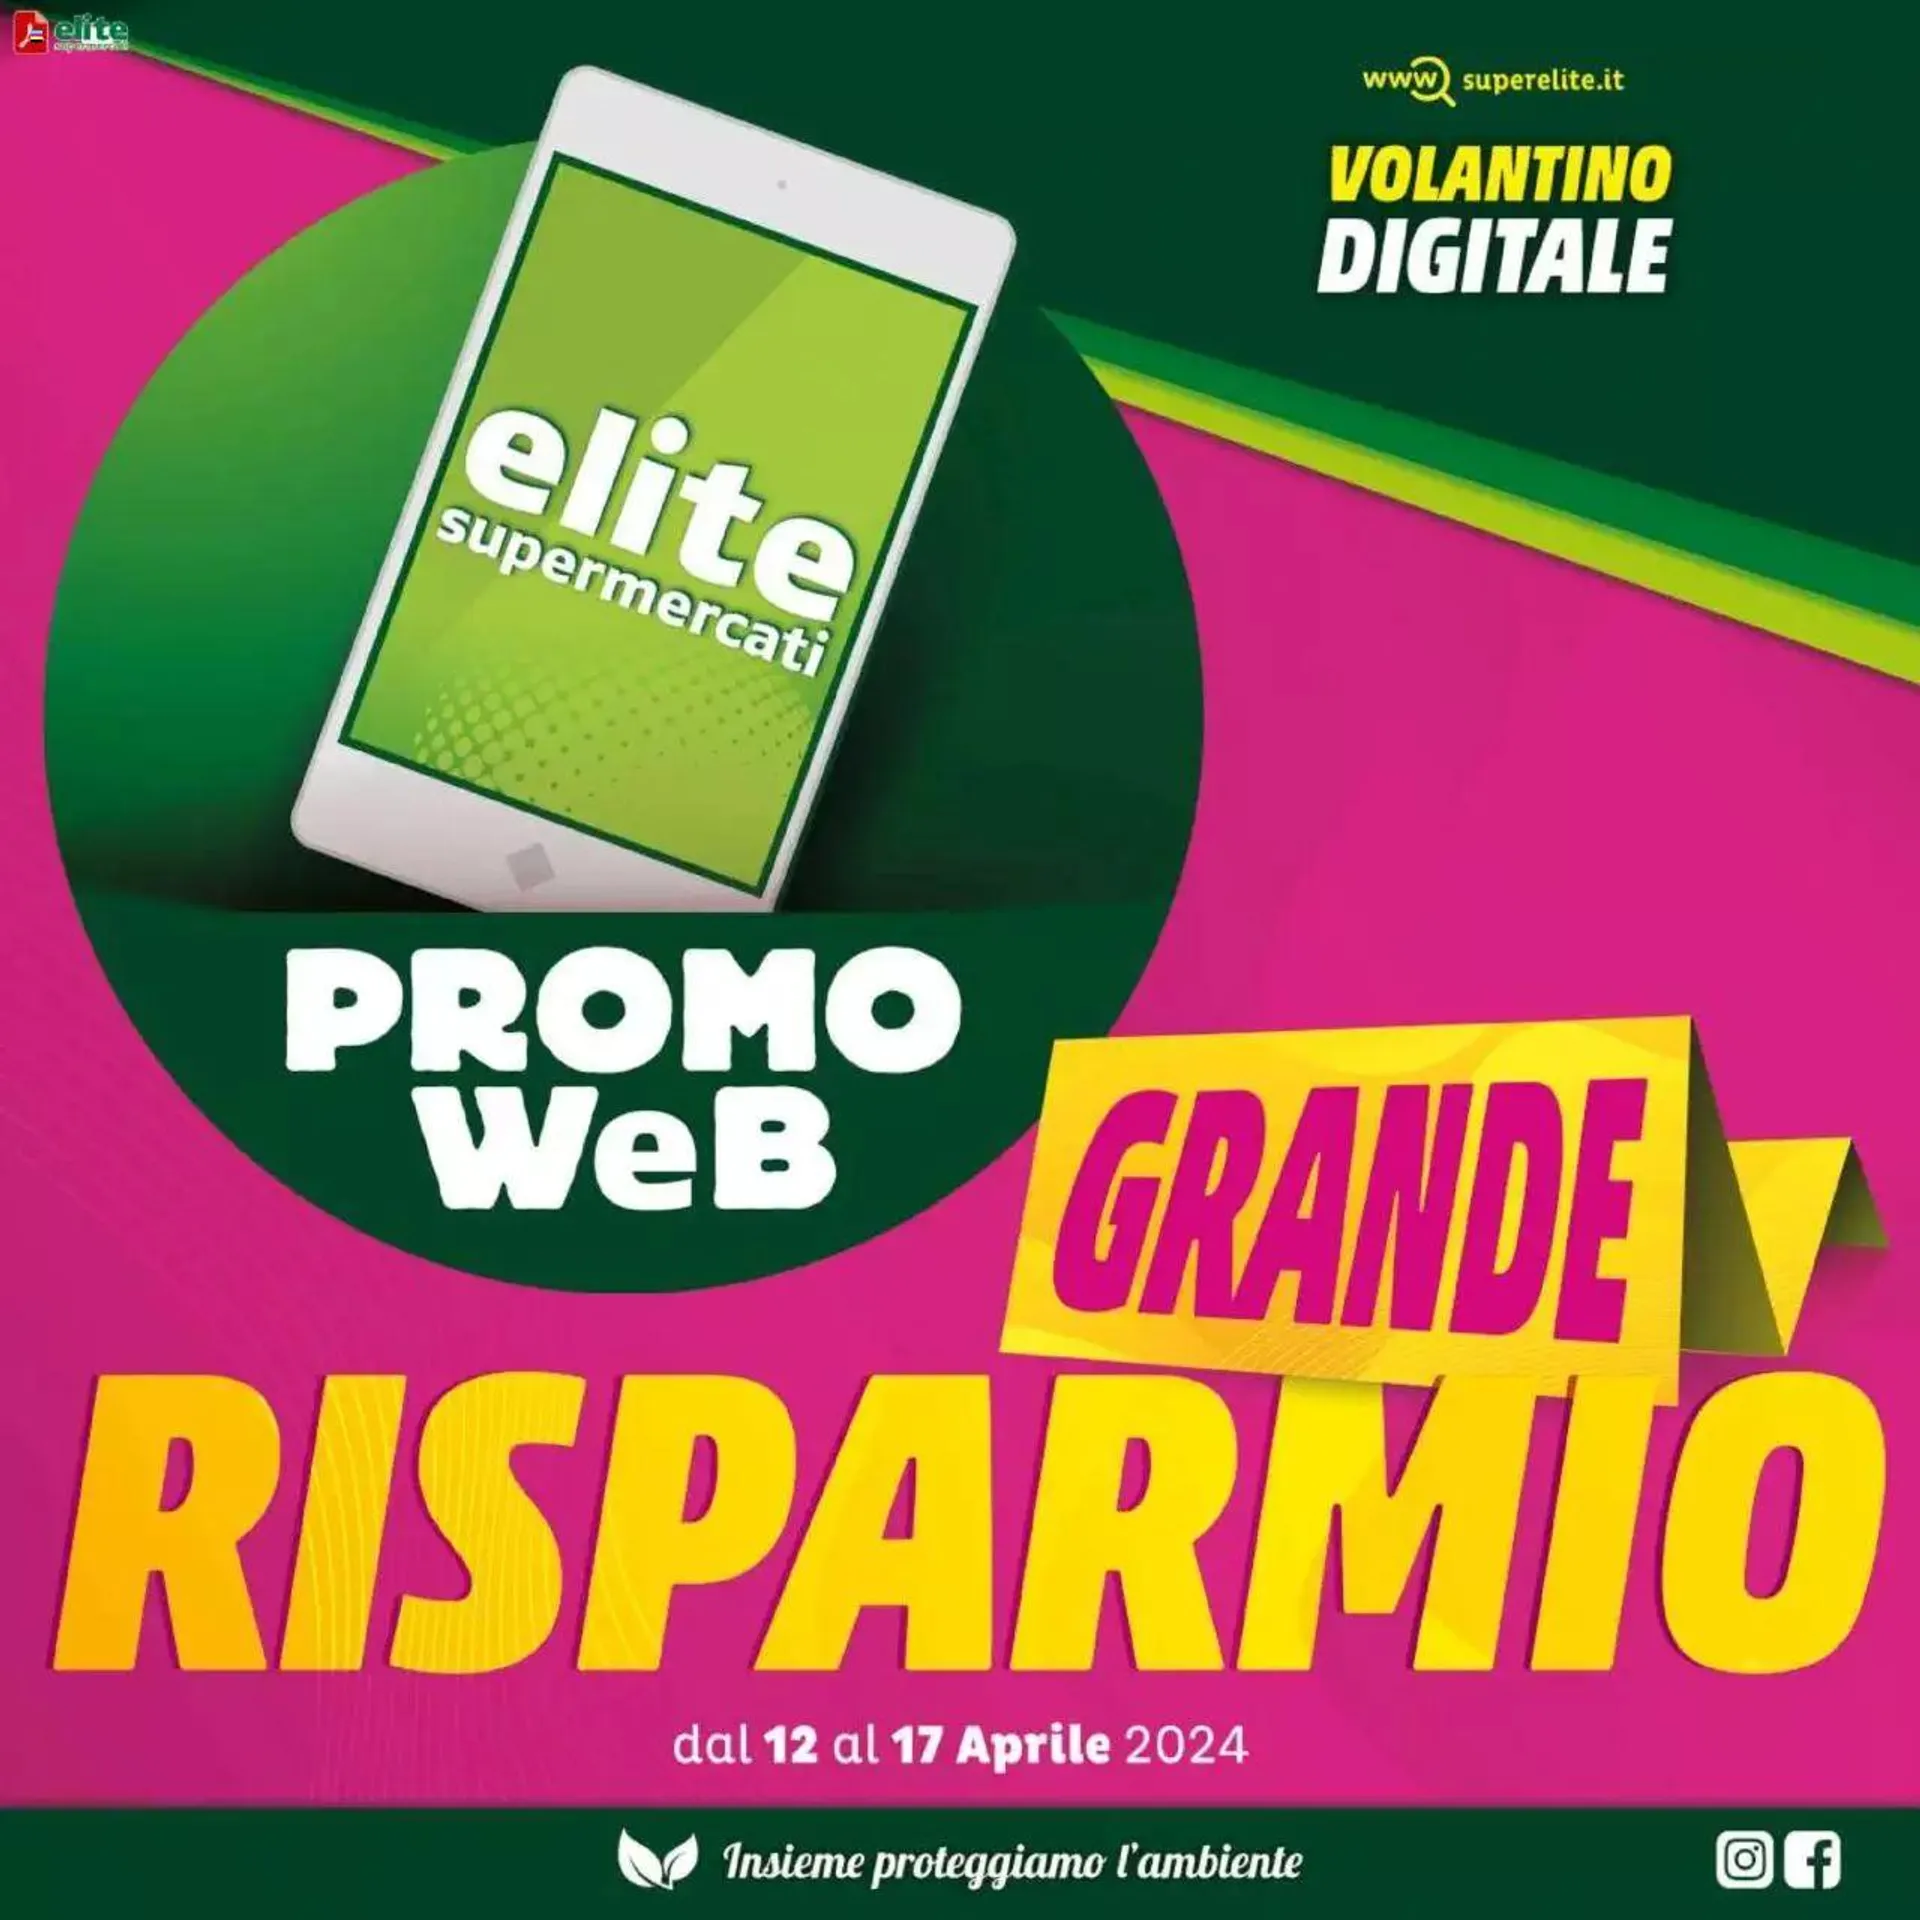 Promo Web - Grande Risparmio Elite Supermercati da 12 aprile a 17 aprile di 2024 - Pagina del volantino 1